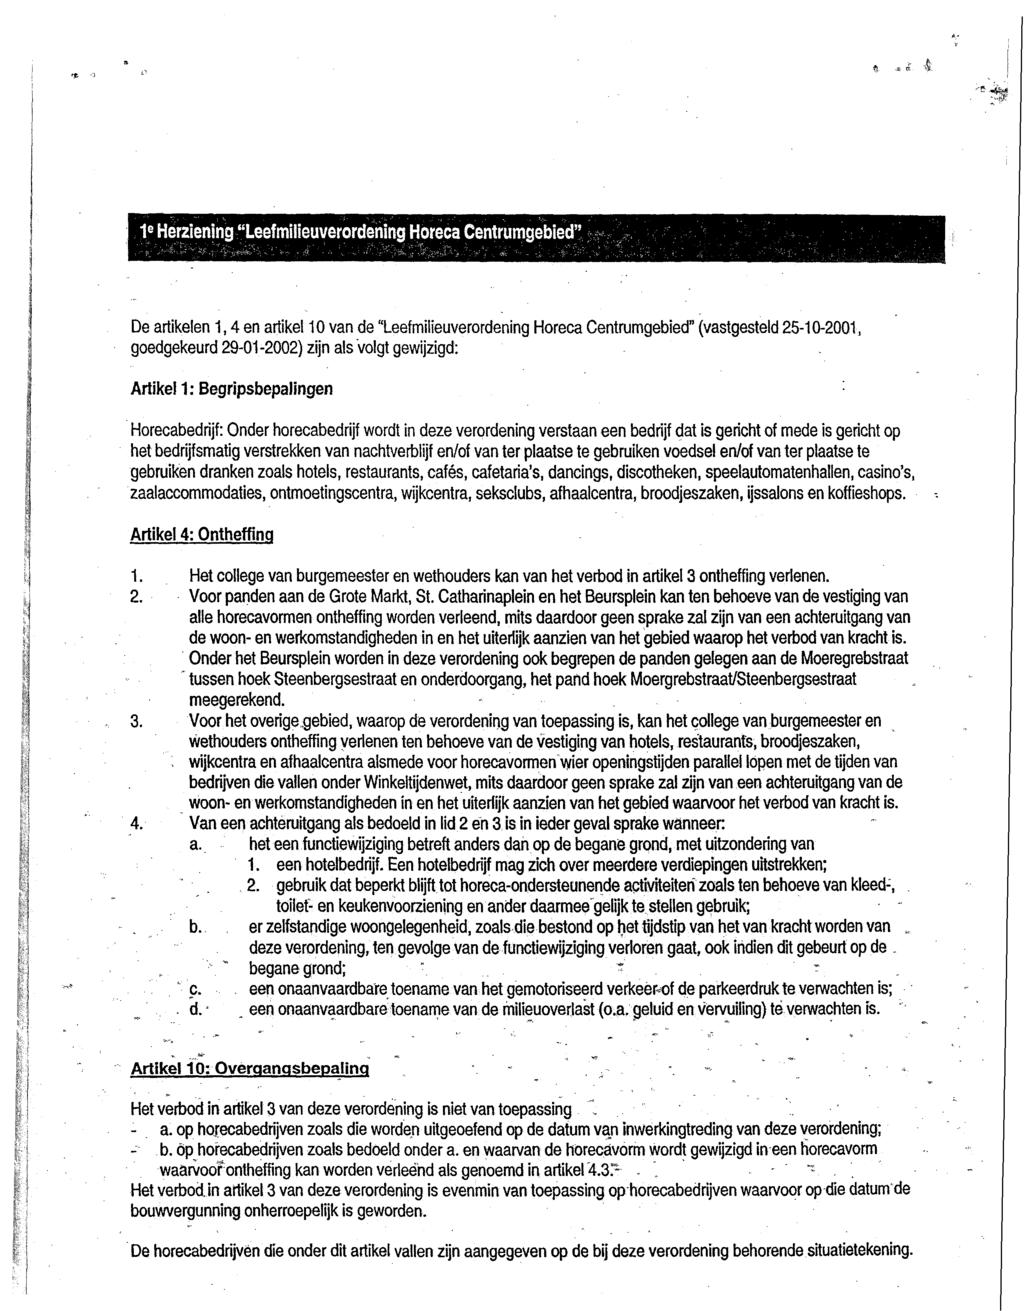 1 e Herziening "Leefmüieuverordening Horeca Centrumgebied'' De artikelen 1,4 en artikel 10 van de "Leefmilieuverordening Horeca Centrumgebied" (vastgesteld 25-10-2001, goedgekeurd 29-01-2002) zijn